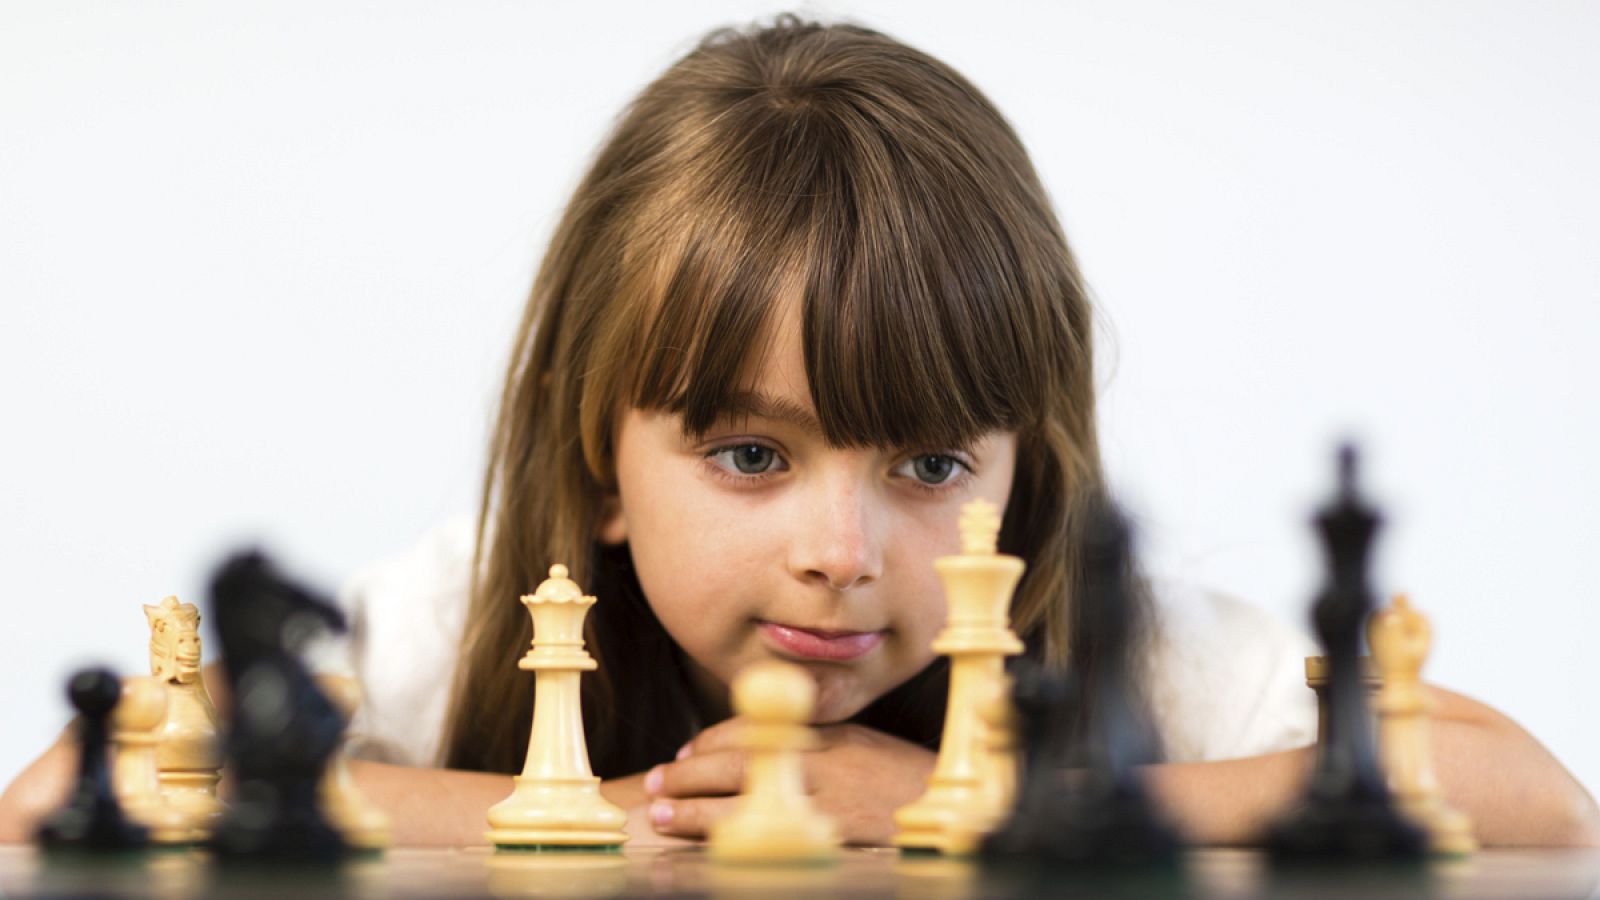 Diferentes estudios científicos han demostrado que el ajedrez permite desarrollar habilidades y valores fundamentales para el ser humano.